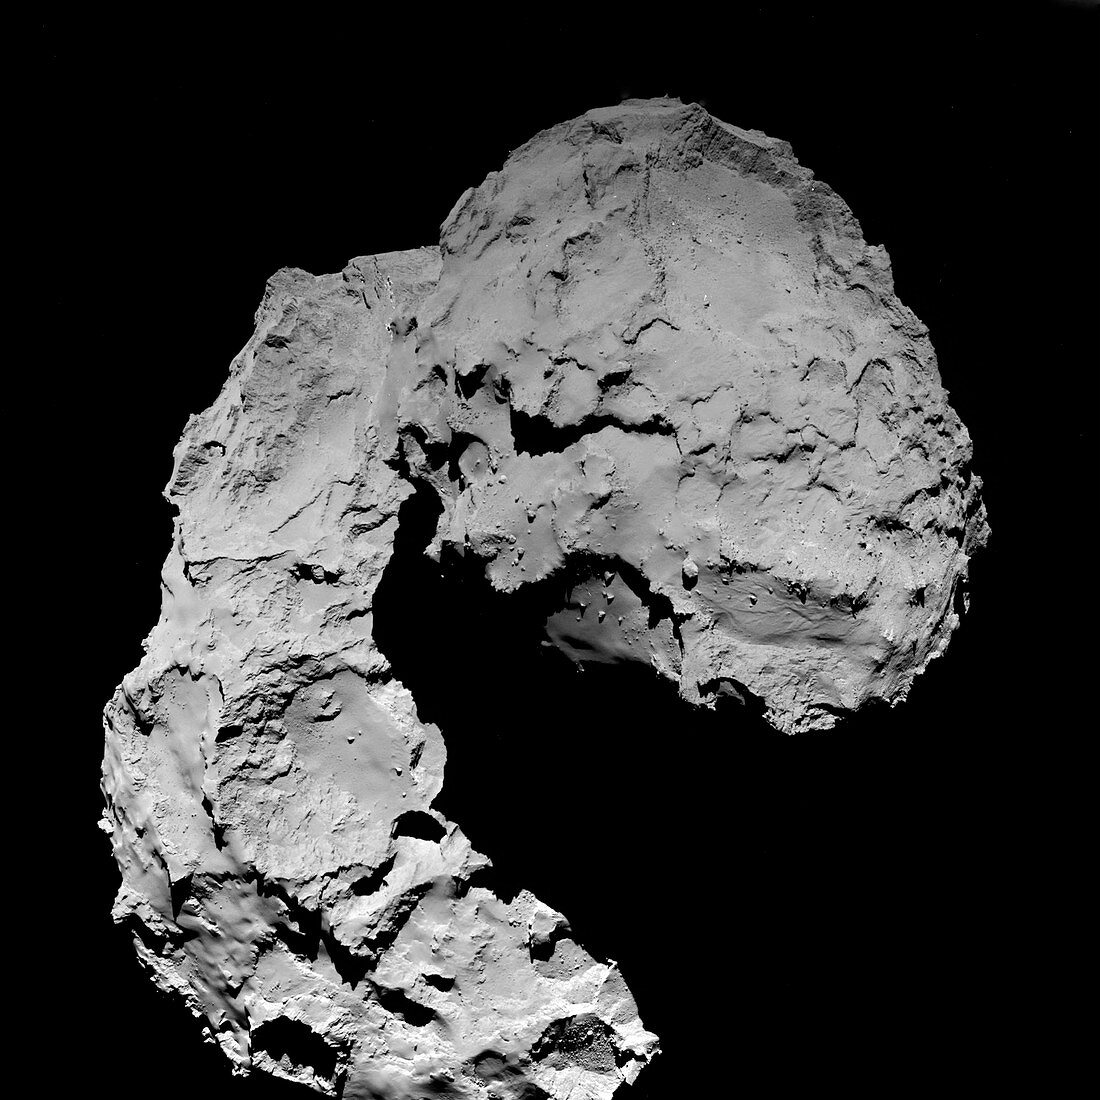 Final descent of Rosetta cometary probe